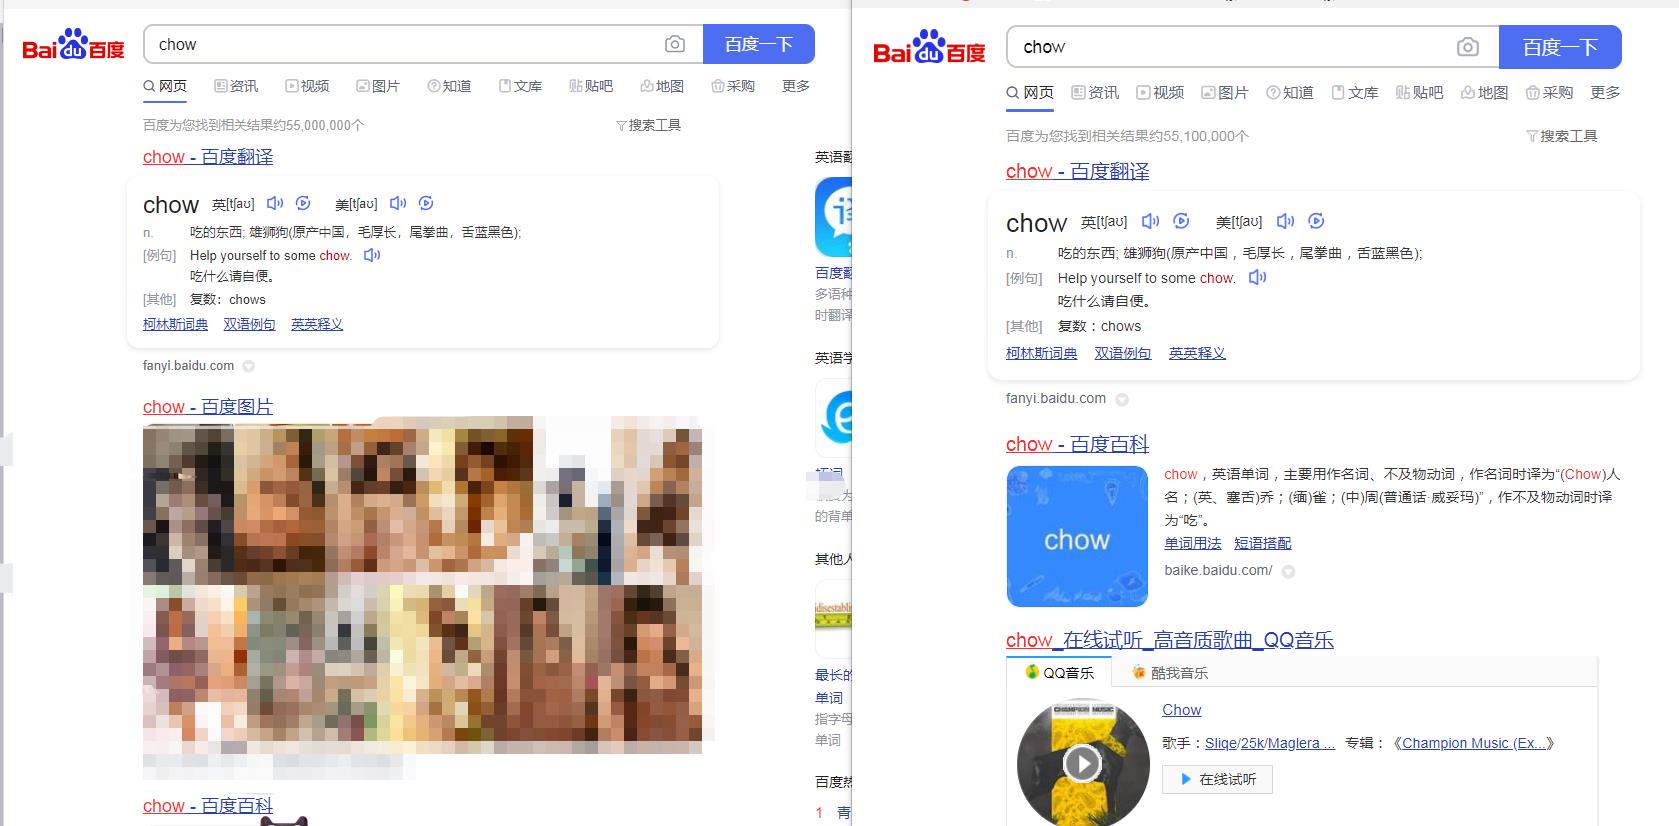 10月30日上午,澎湃新闻通过百度搜索"chow"一词,页面出现不良图片(左)